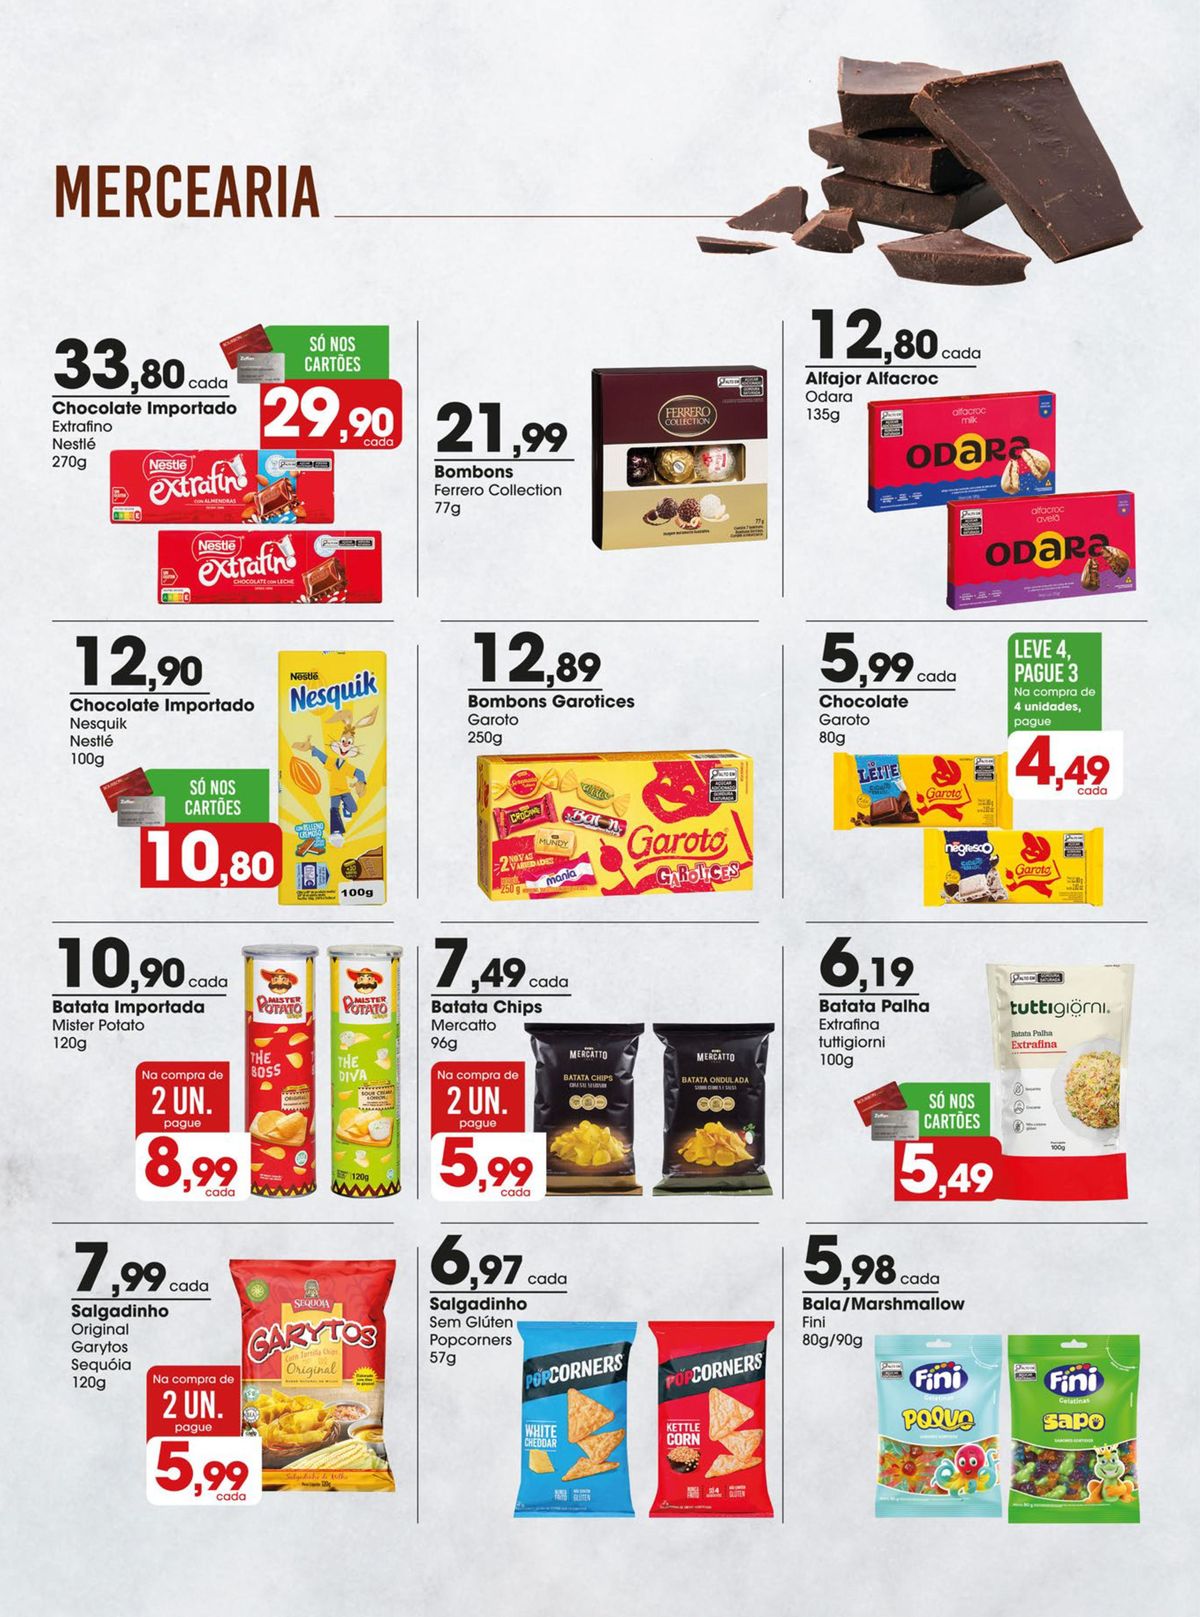 Promoção de Chocolate Importado Nestlé e Ferrero Collection